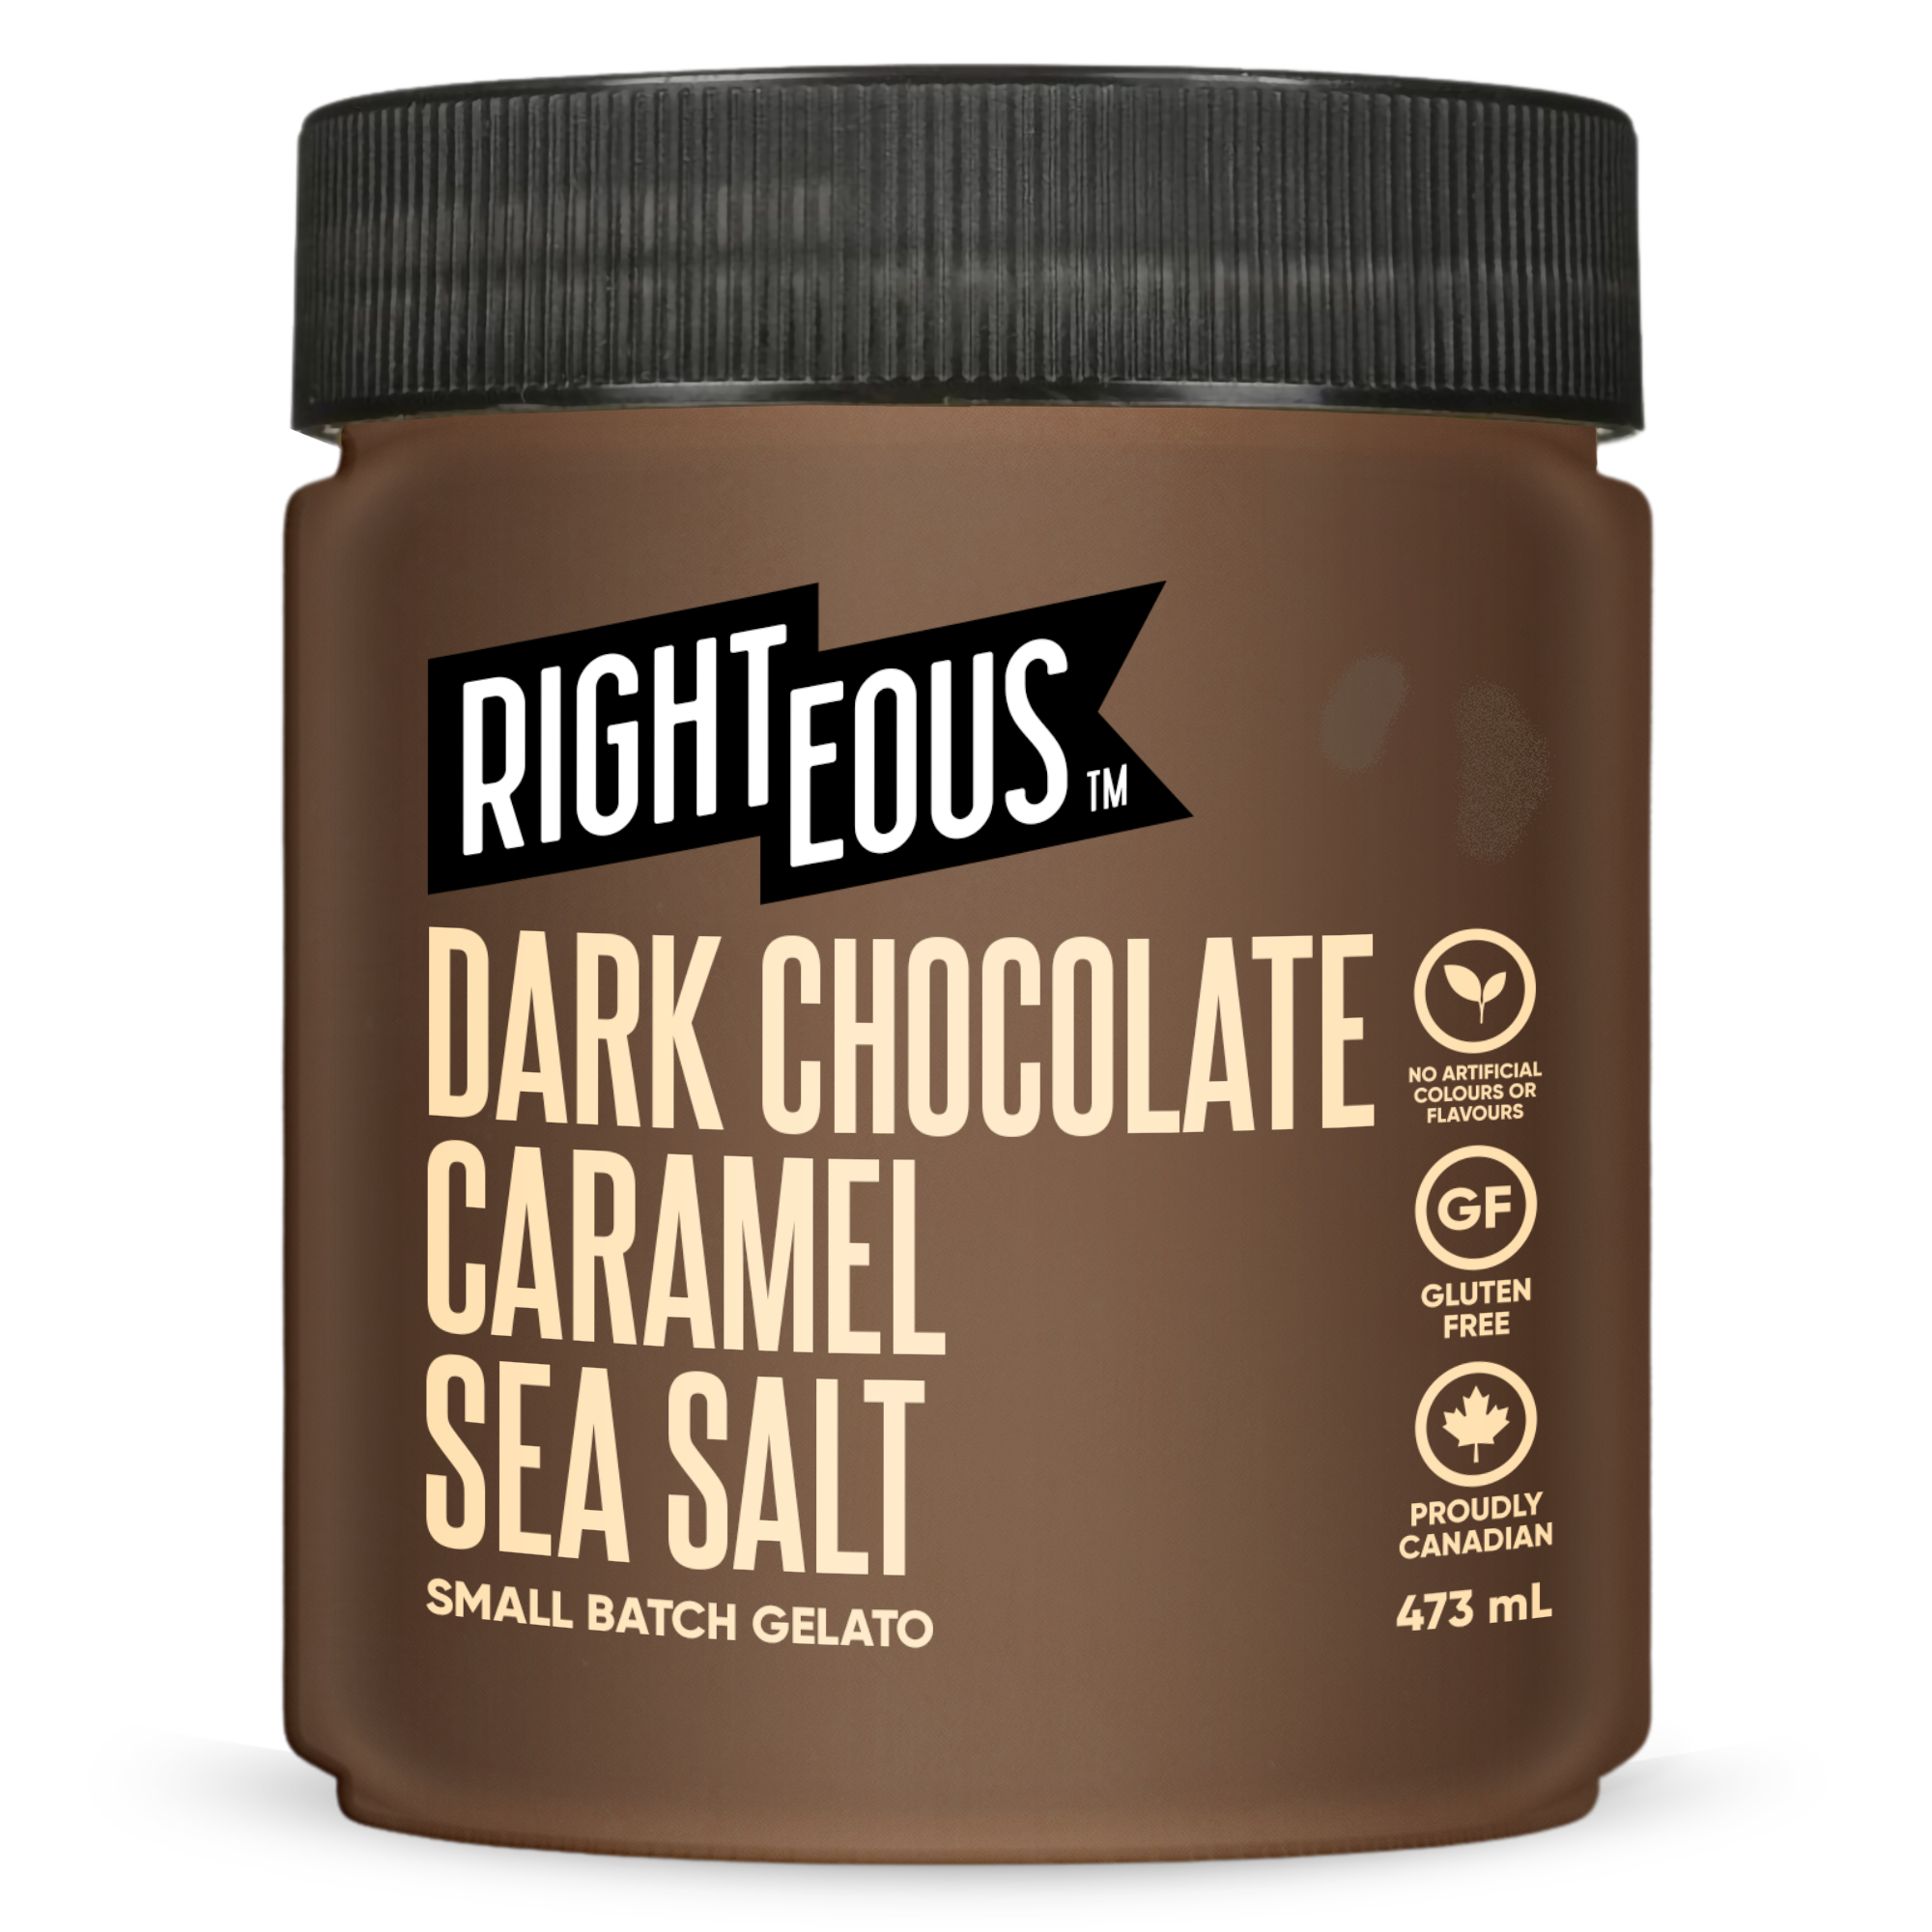 Dark Chocolate Caramel Sea Salt Gelato